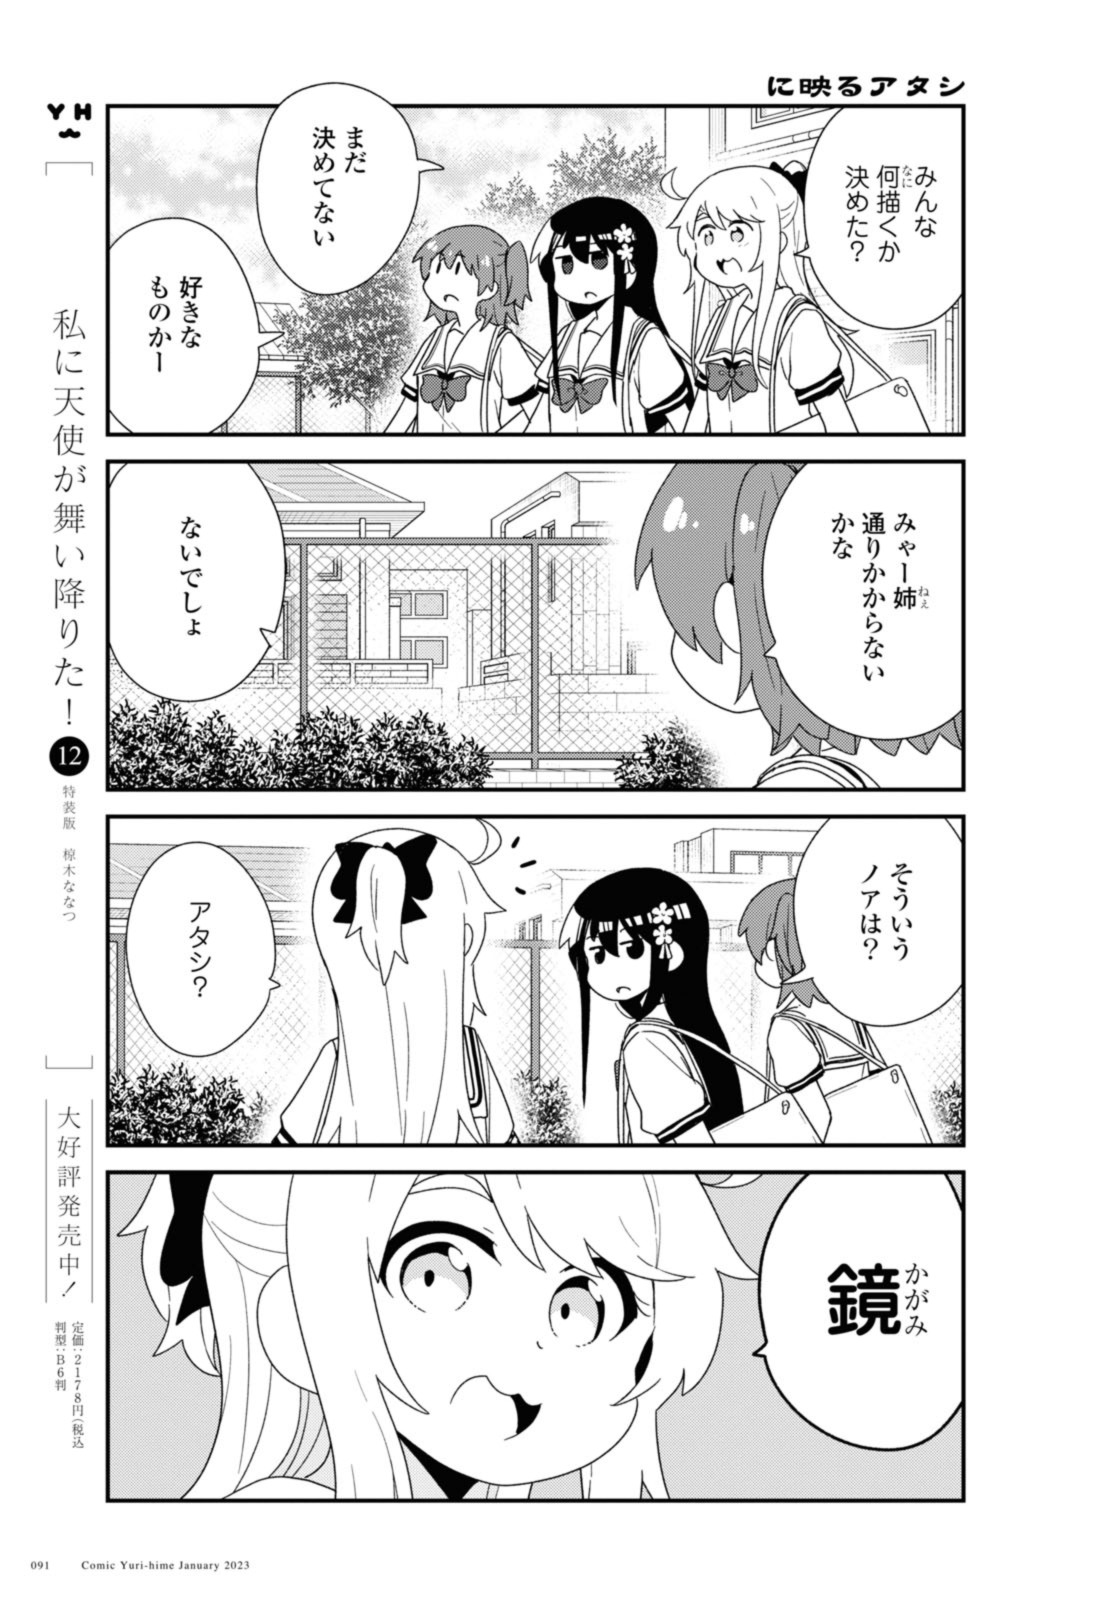 Watashi ni Tenshi ga Maiorita! - Chapter 101 - Page 3